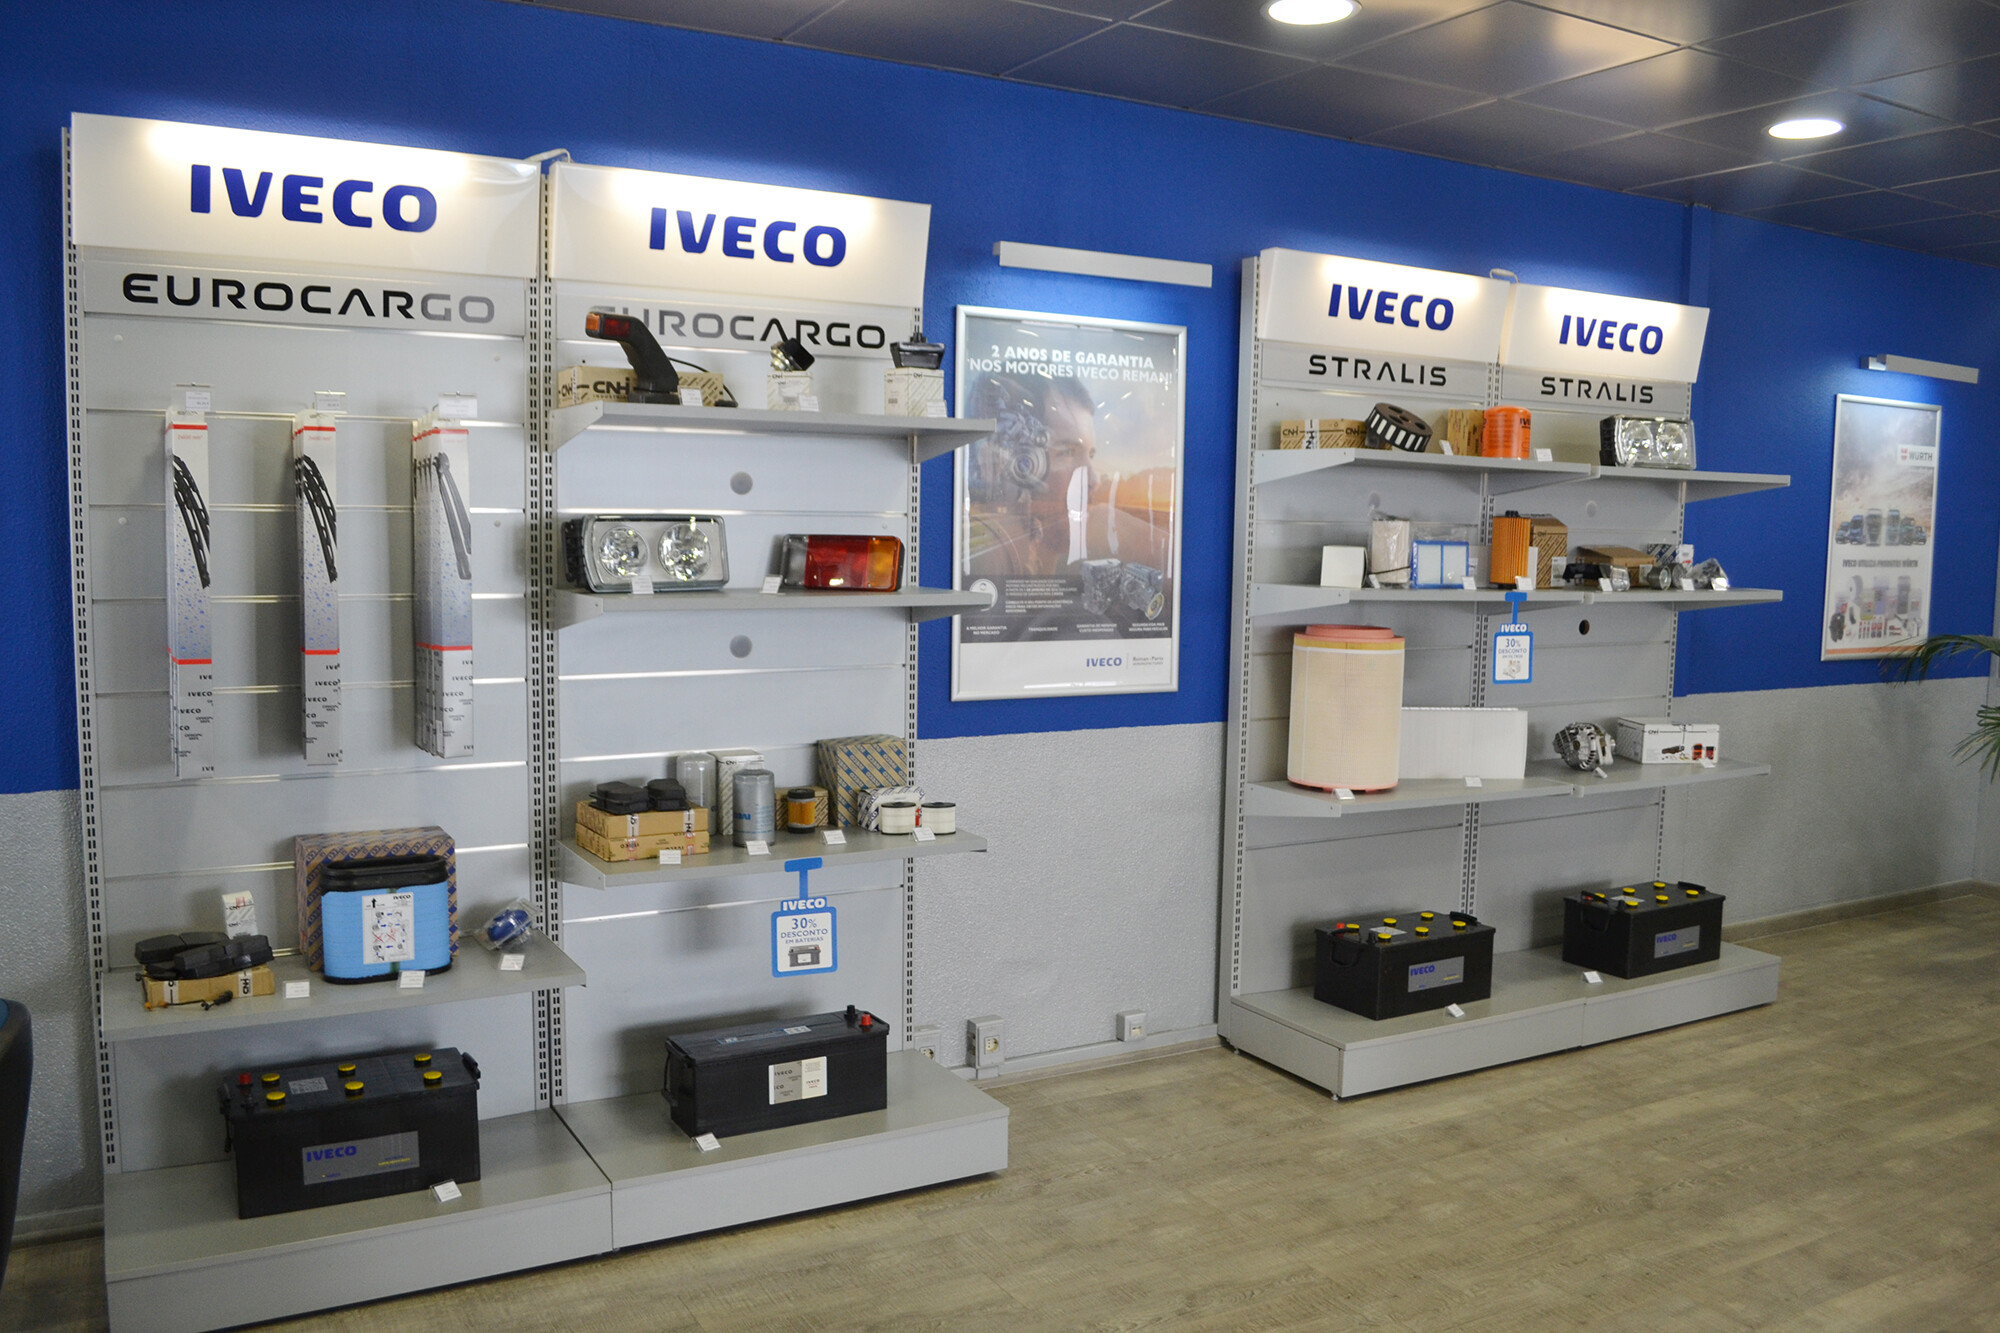 A venda de peças Iveco e multimarca é agregada a um serviço de consultoria e apoio técnico